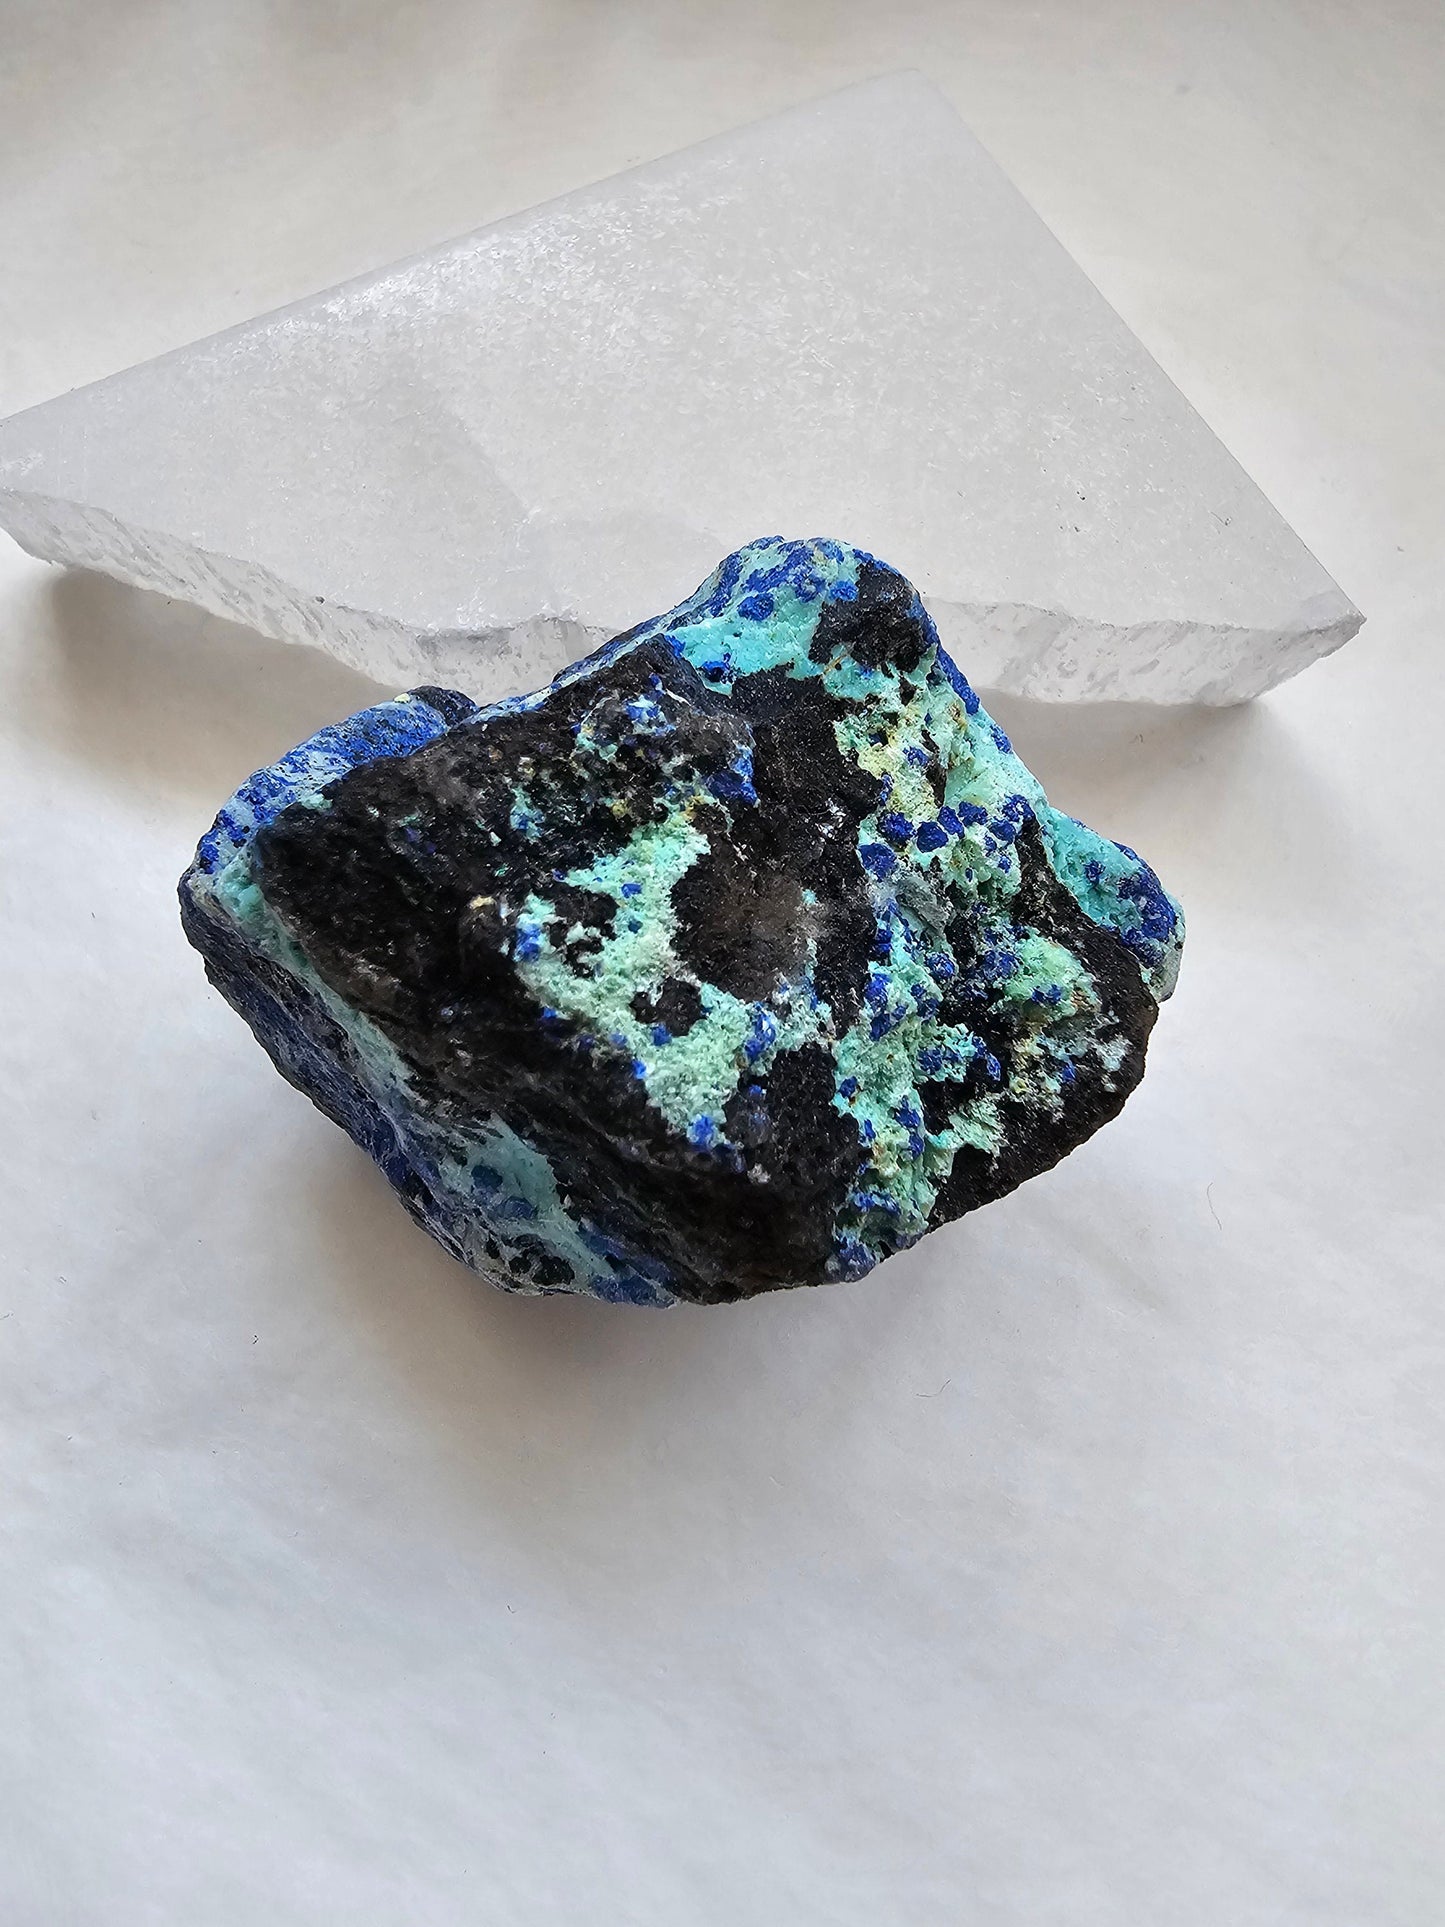 Raw Azurite specimen with vibrant aqua colour